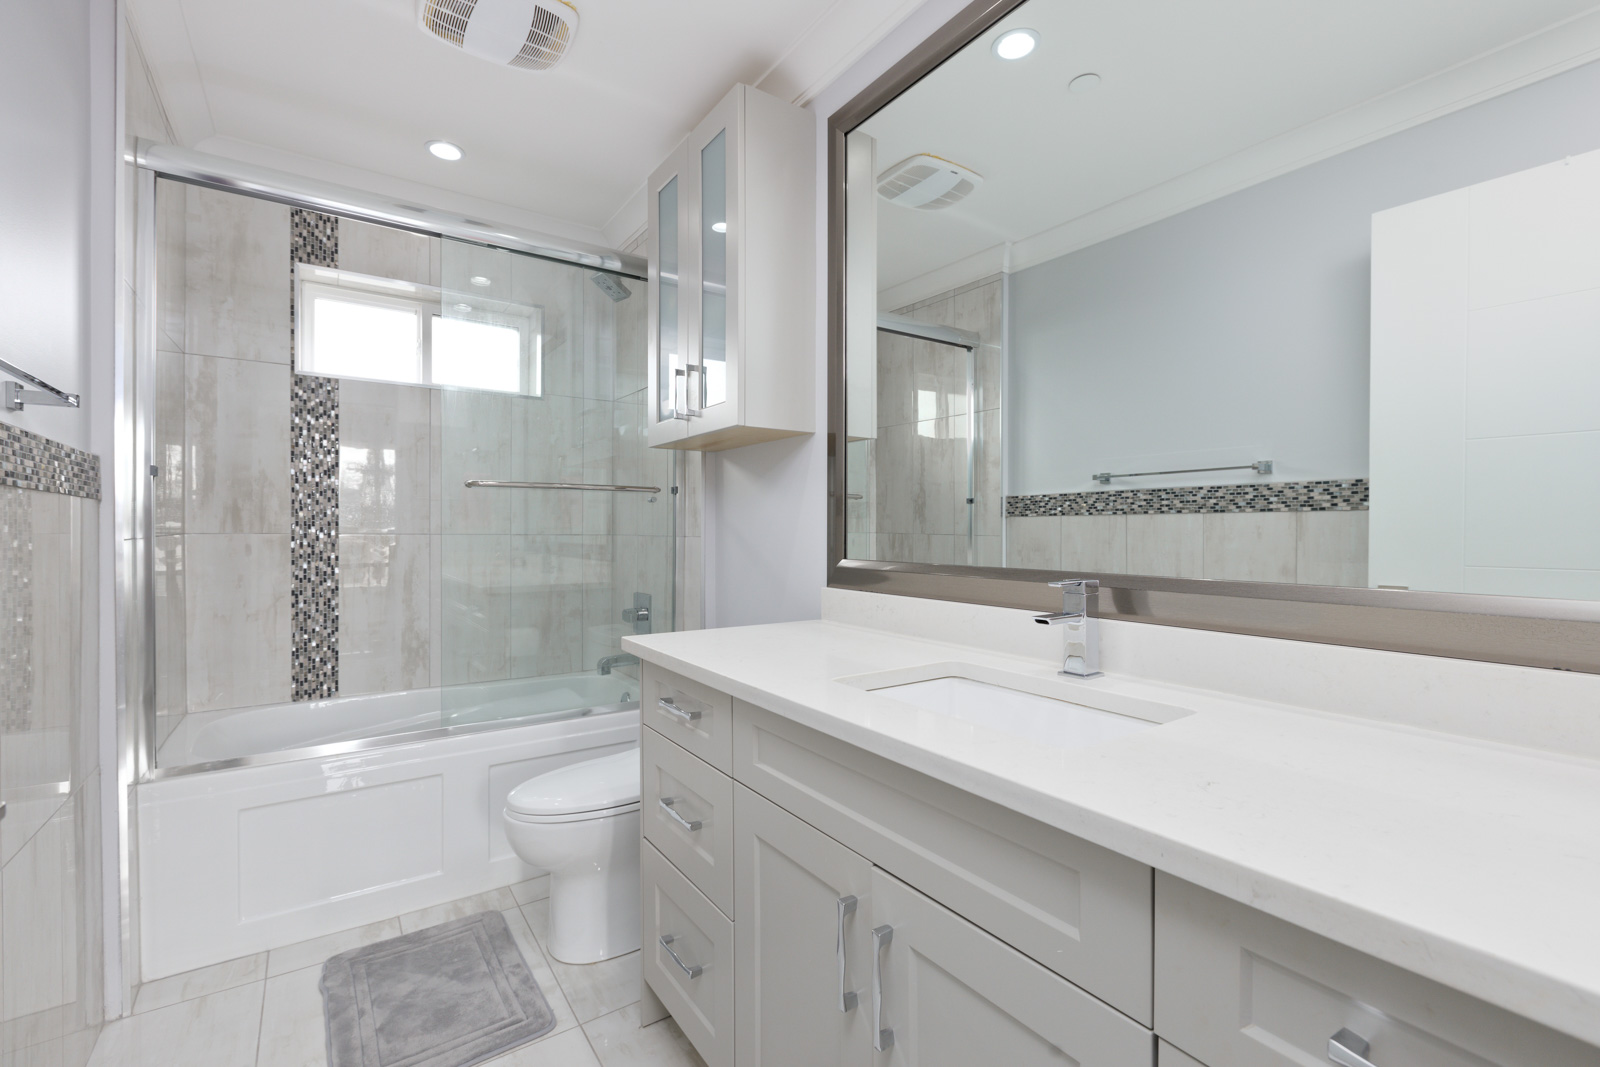 washroom with tiled floors and tub area. large vanity mirror